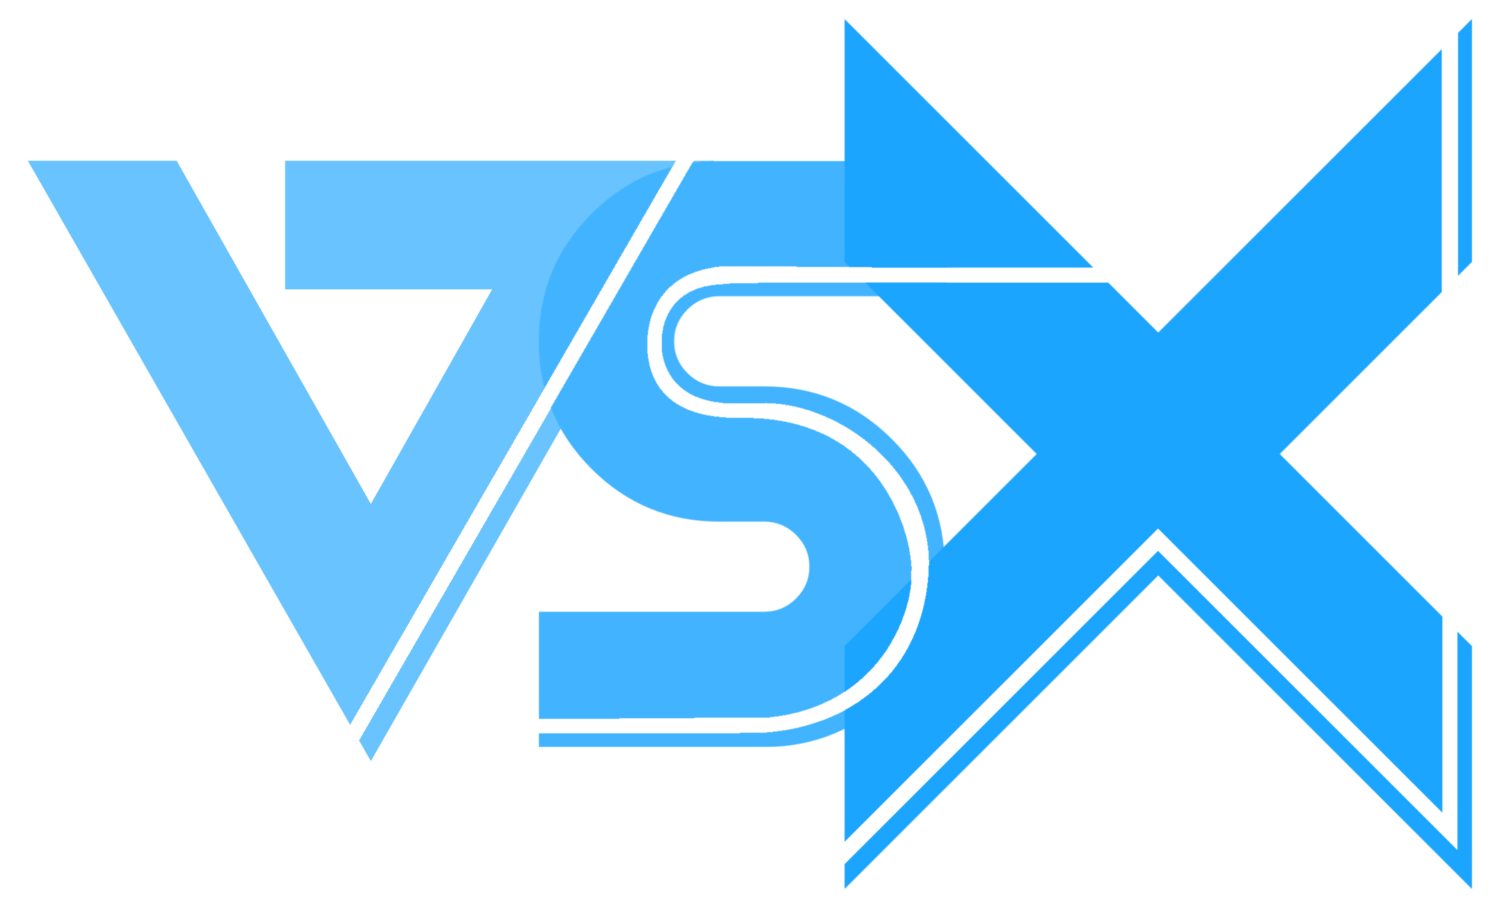 VSX Logo - VSX